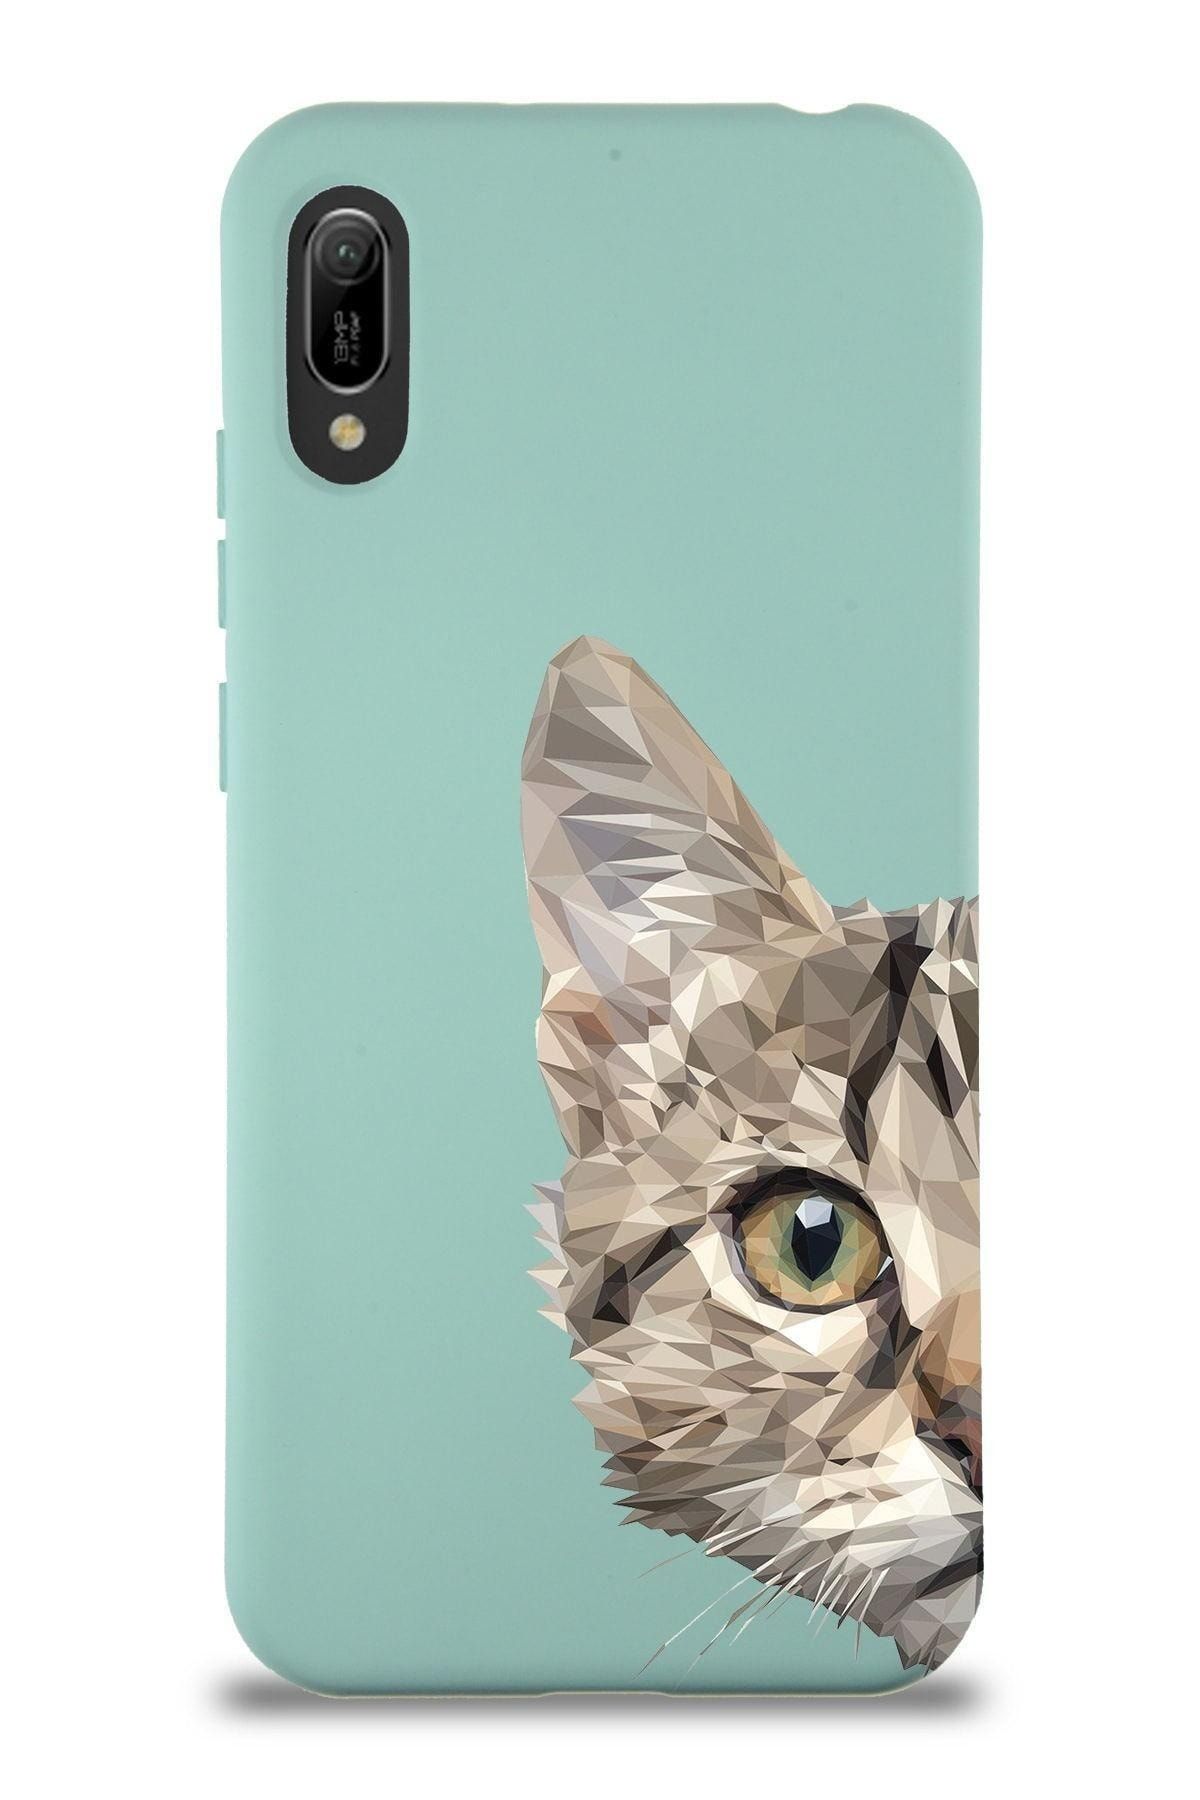 PrintiFy Huawei Y6 2019 Uyumlu Lansman Kılıf Catface Tasarımlı Içi Kadife Kapak-turkuaz